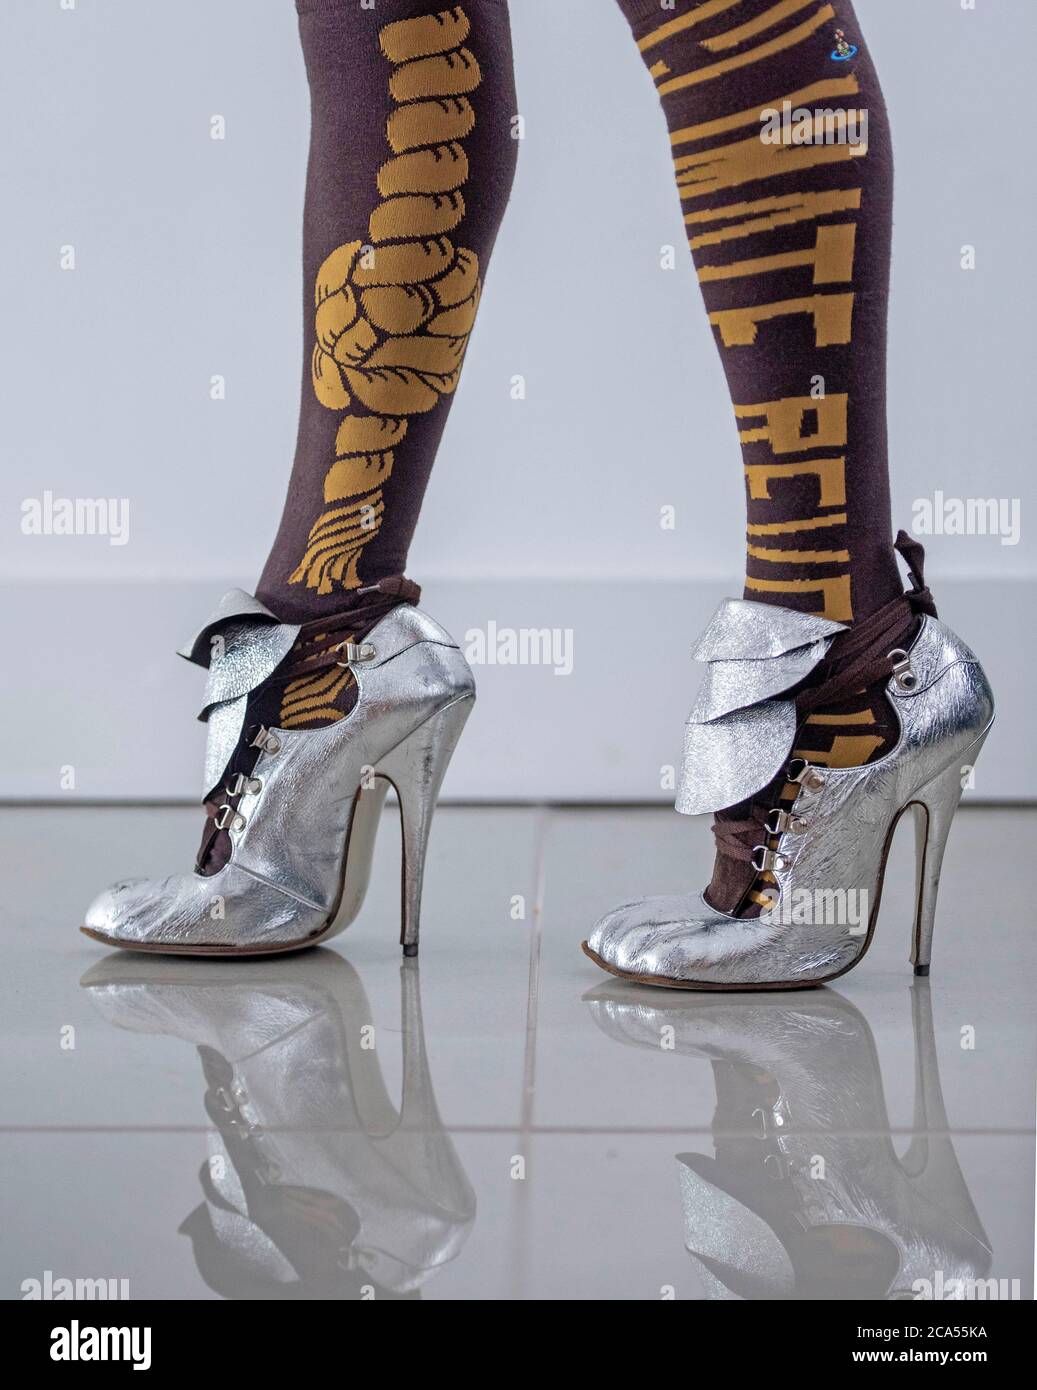 Zapatos y mallas de tacón por la diseñadora de moda británica Vivienne Westwood. Foto de stock